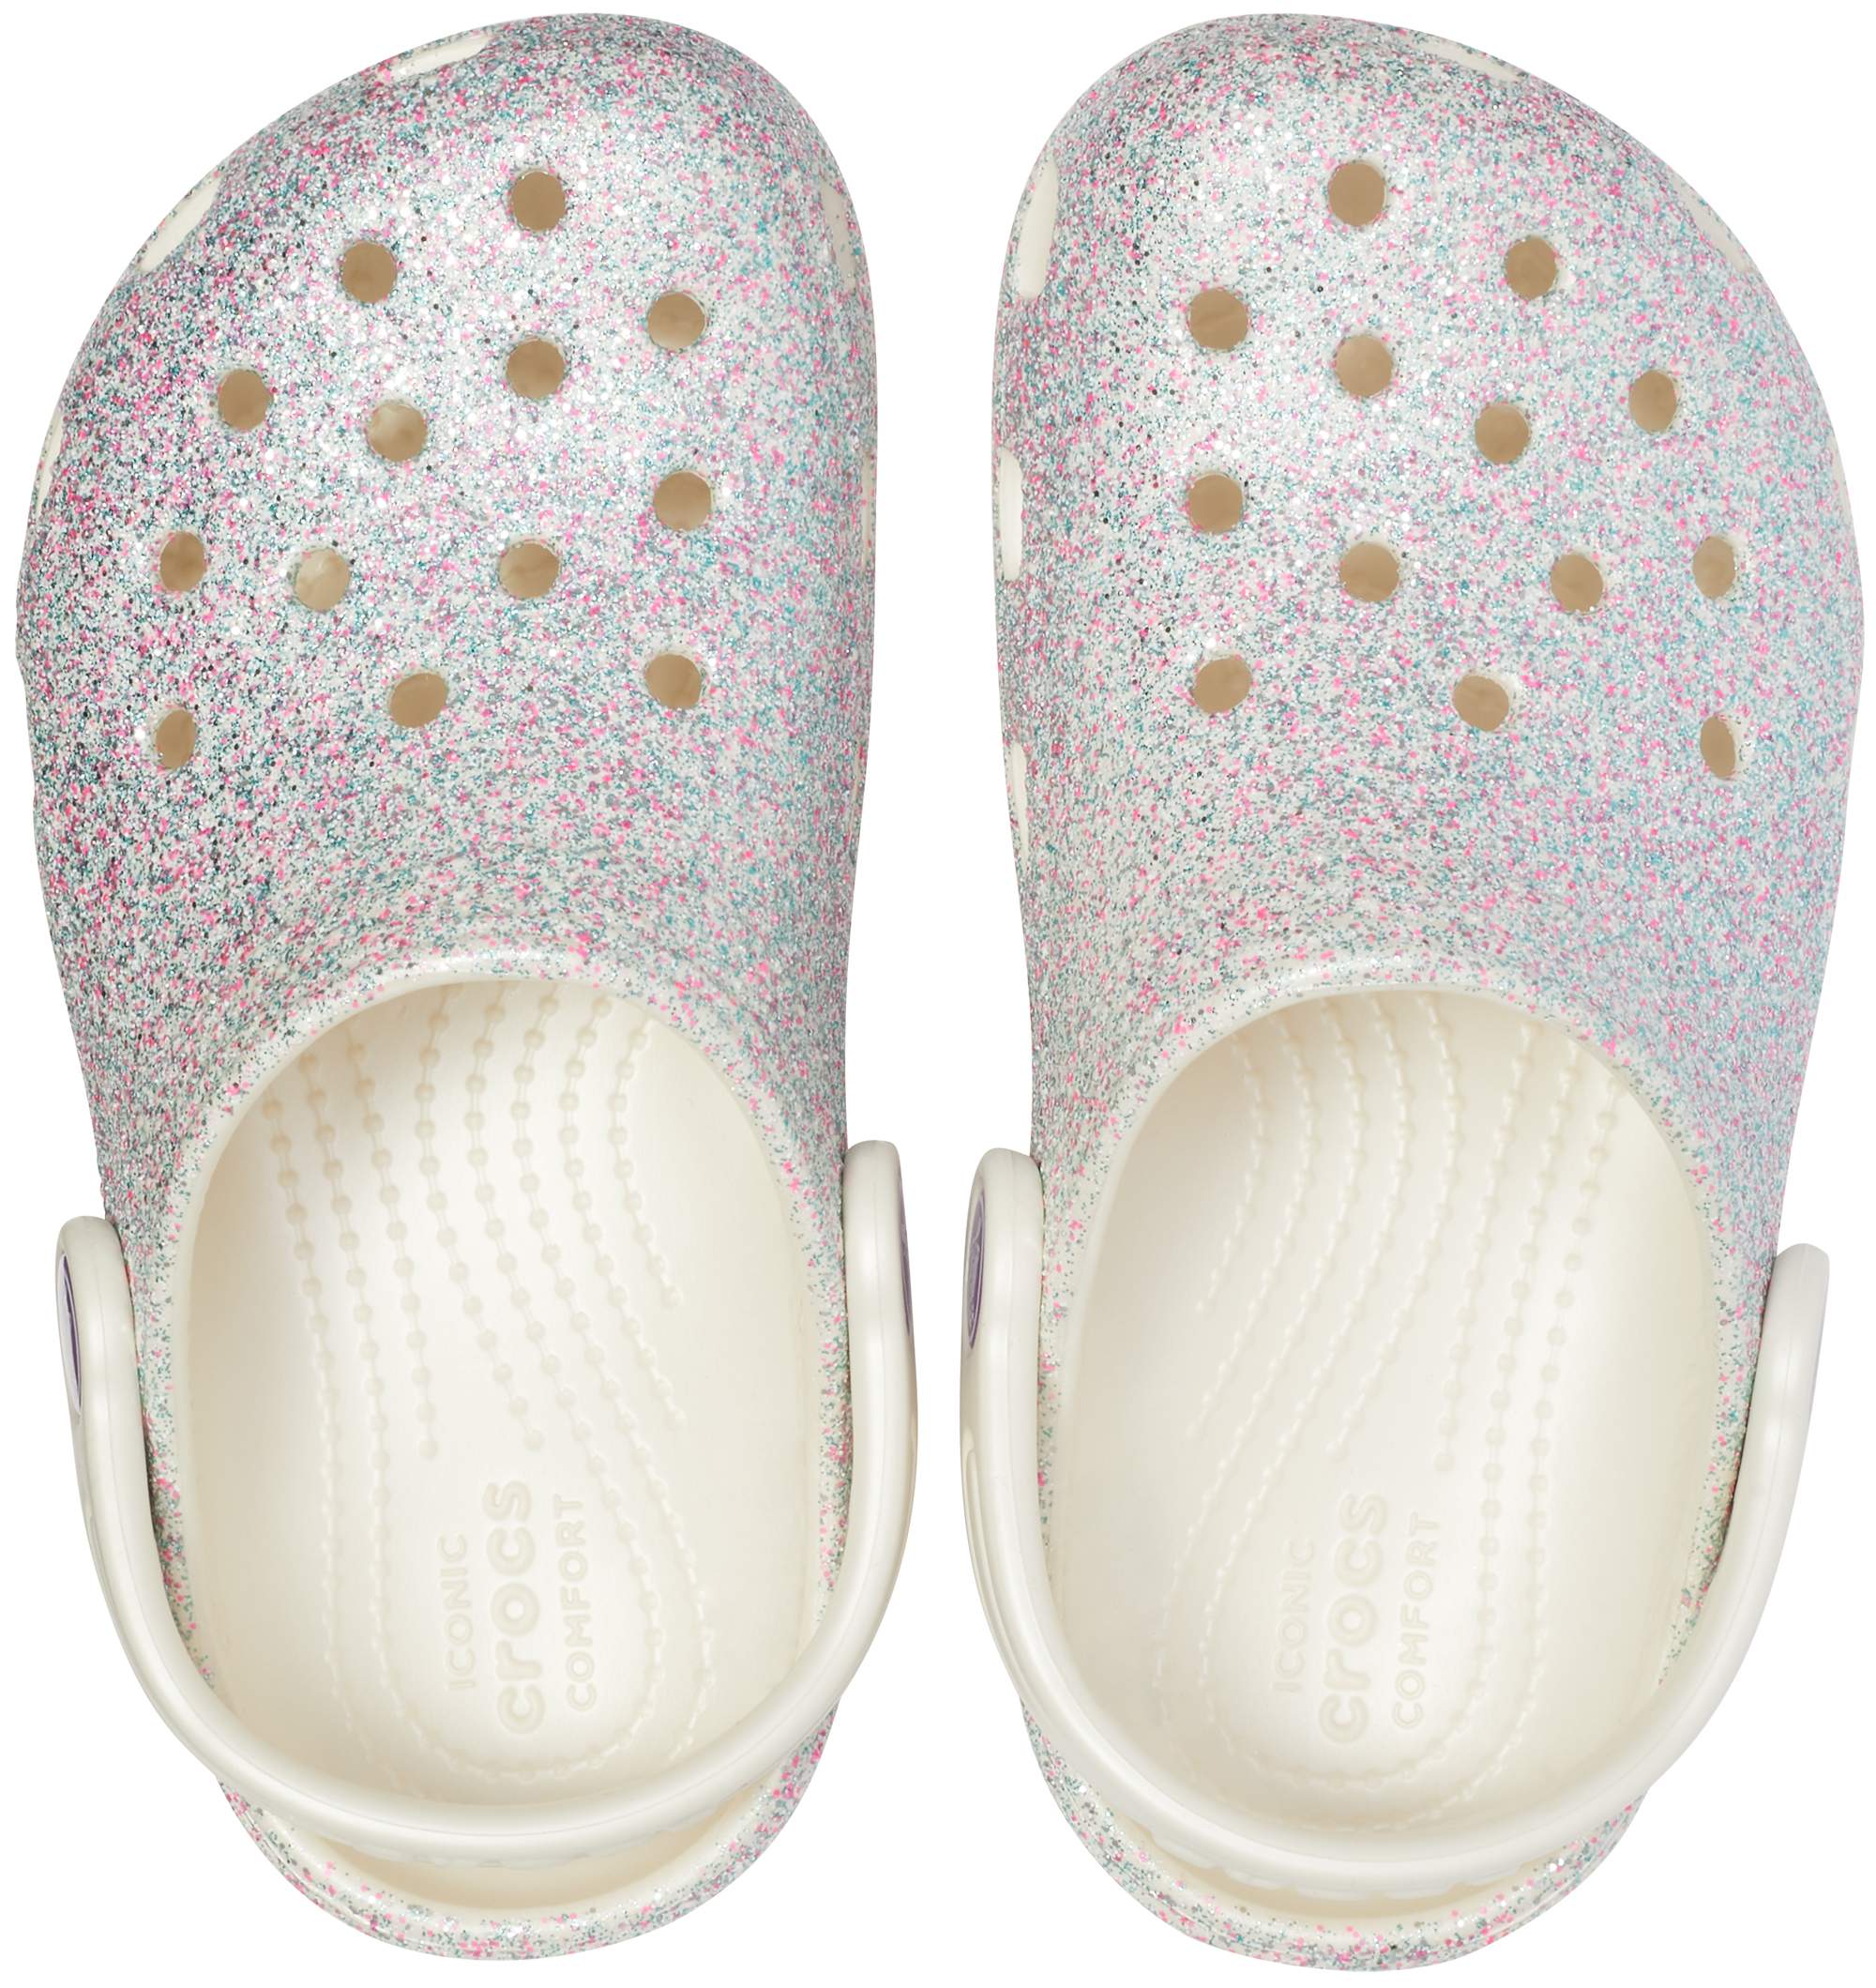 crocs classic glitter